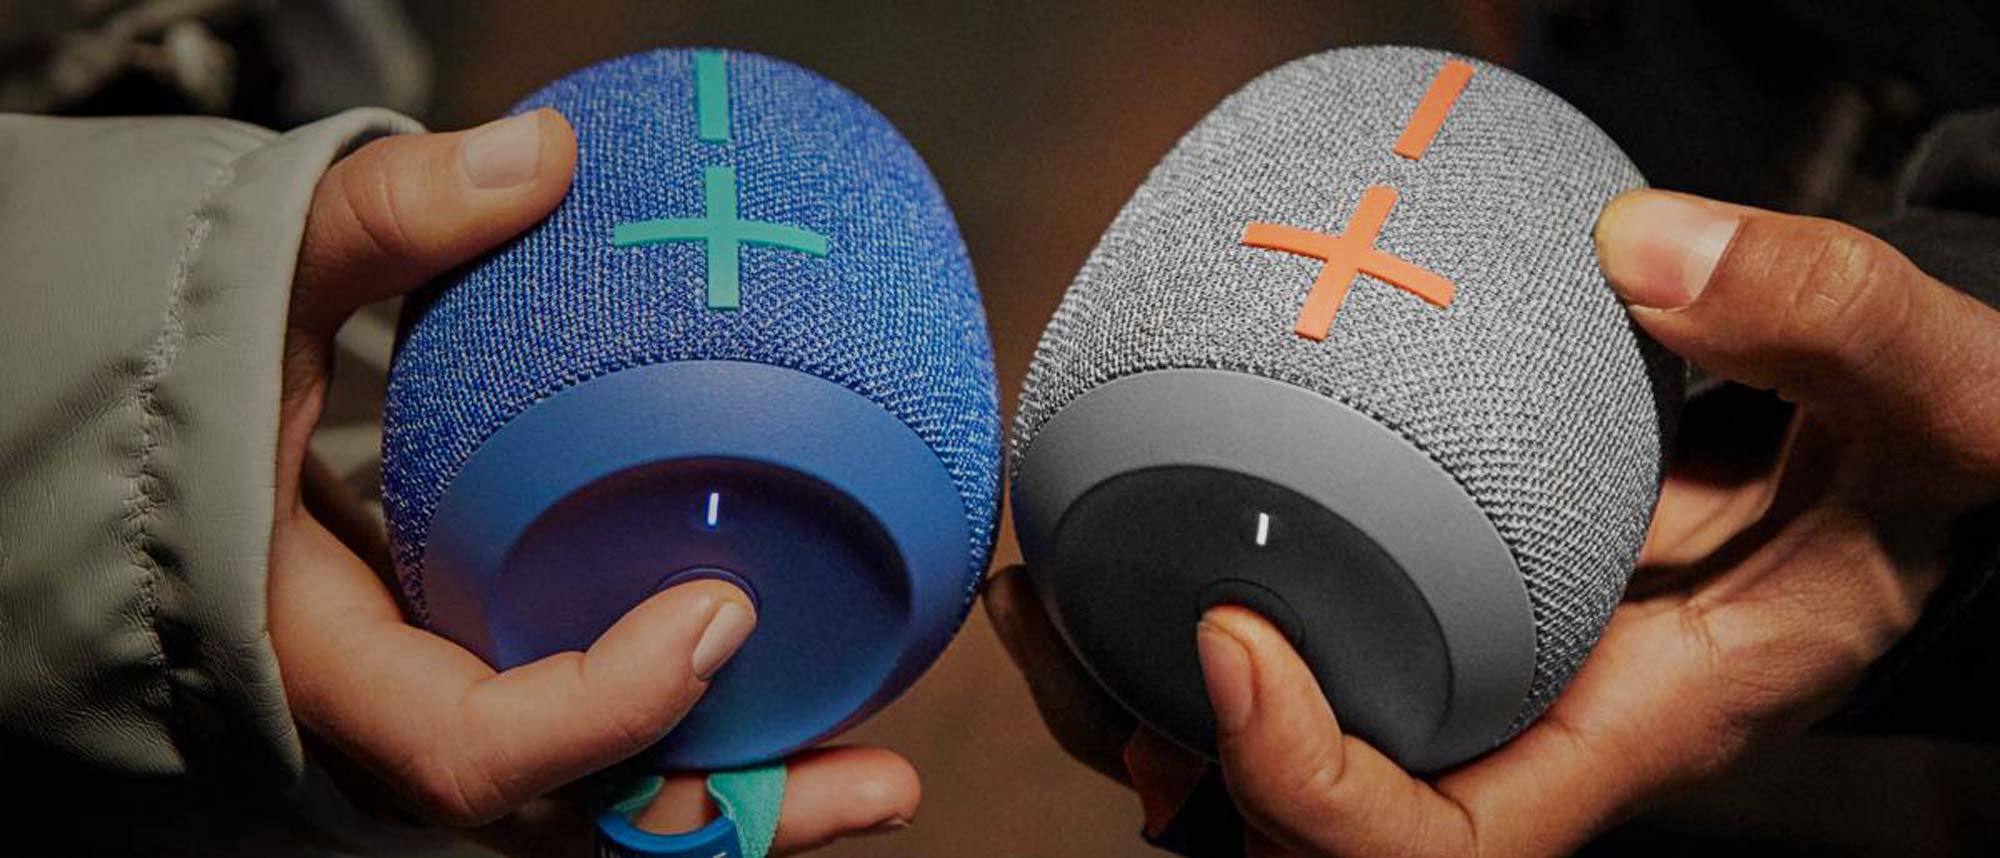 Ultimate Ears WONDERBOOM 3 speaker hands-on look